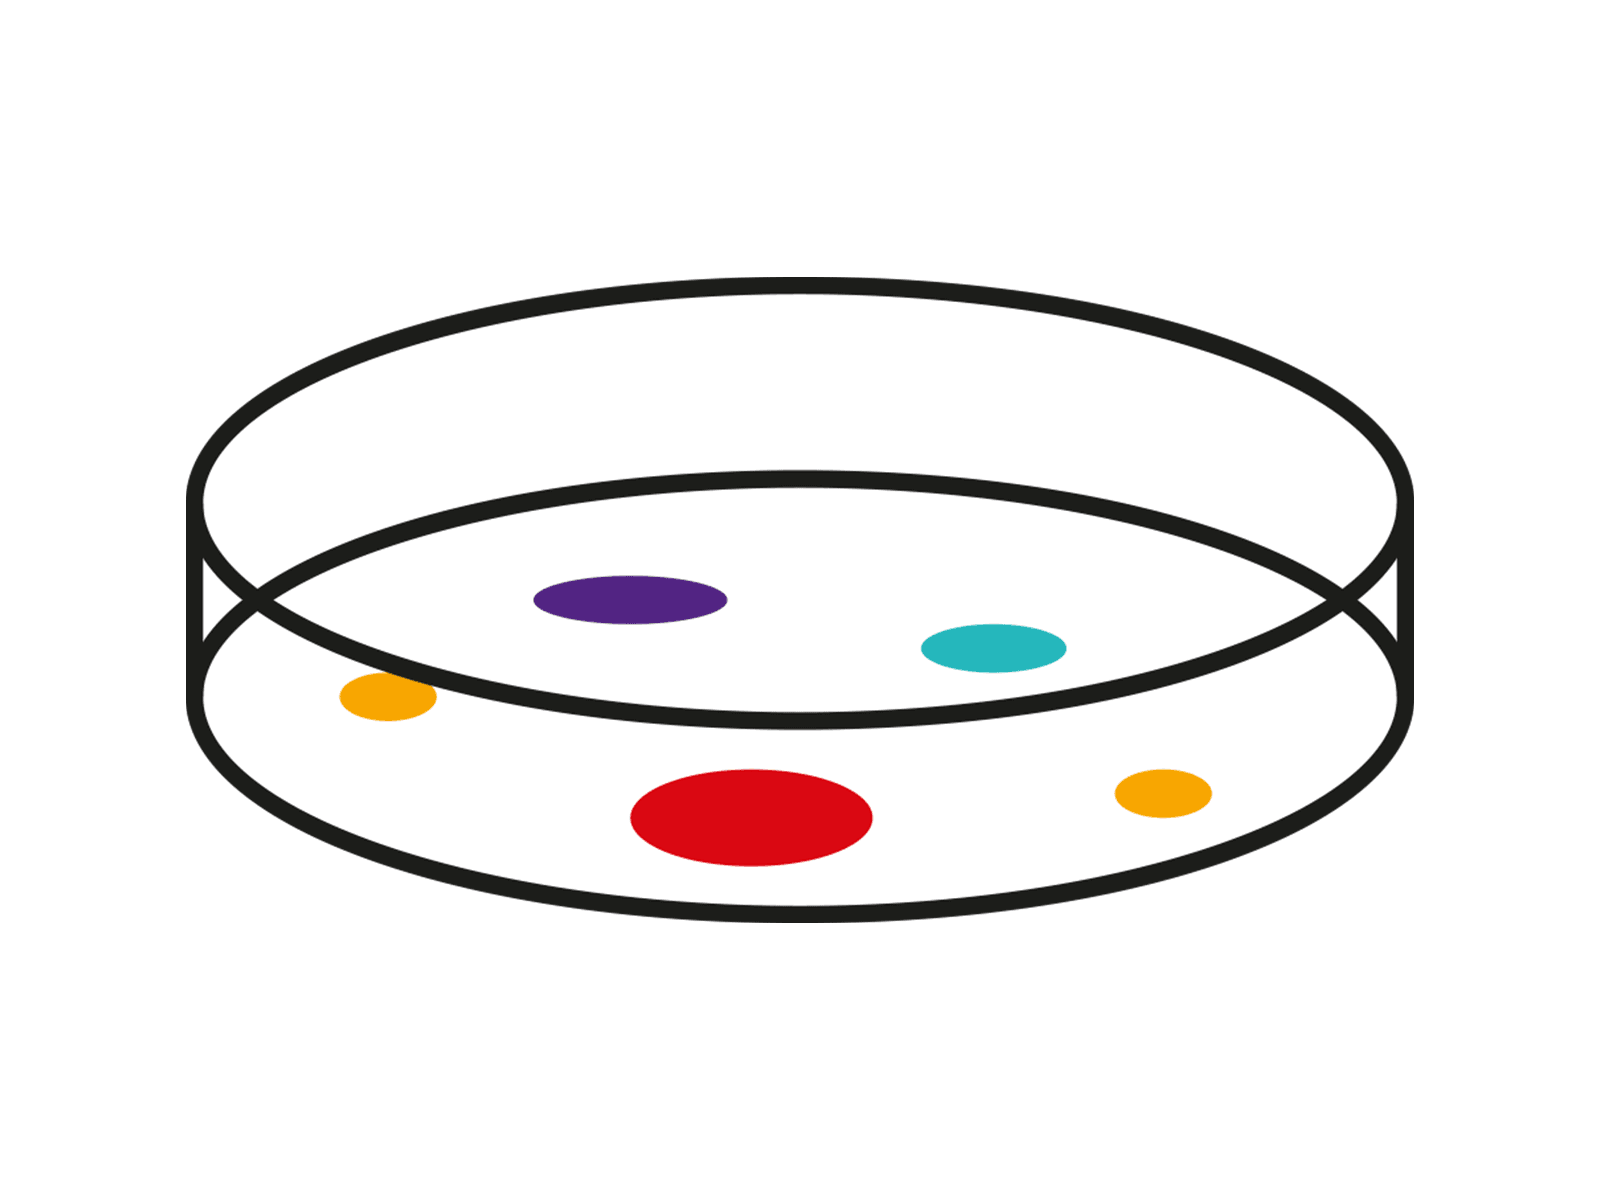 Petri dish visual